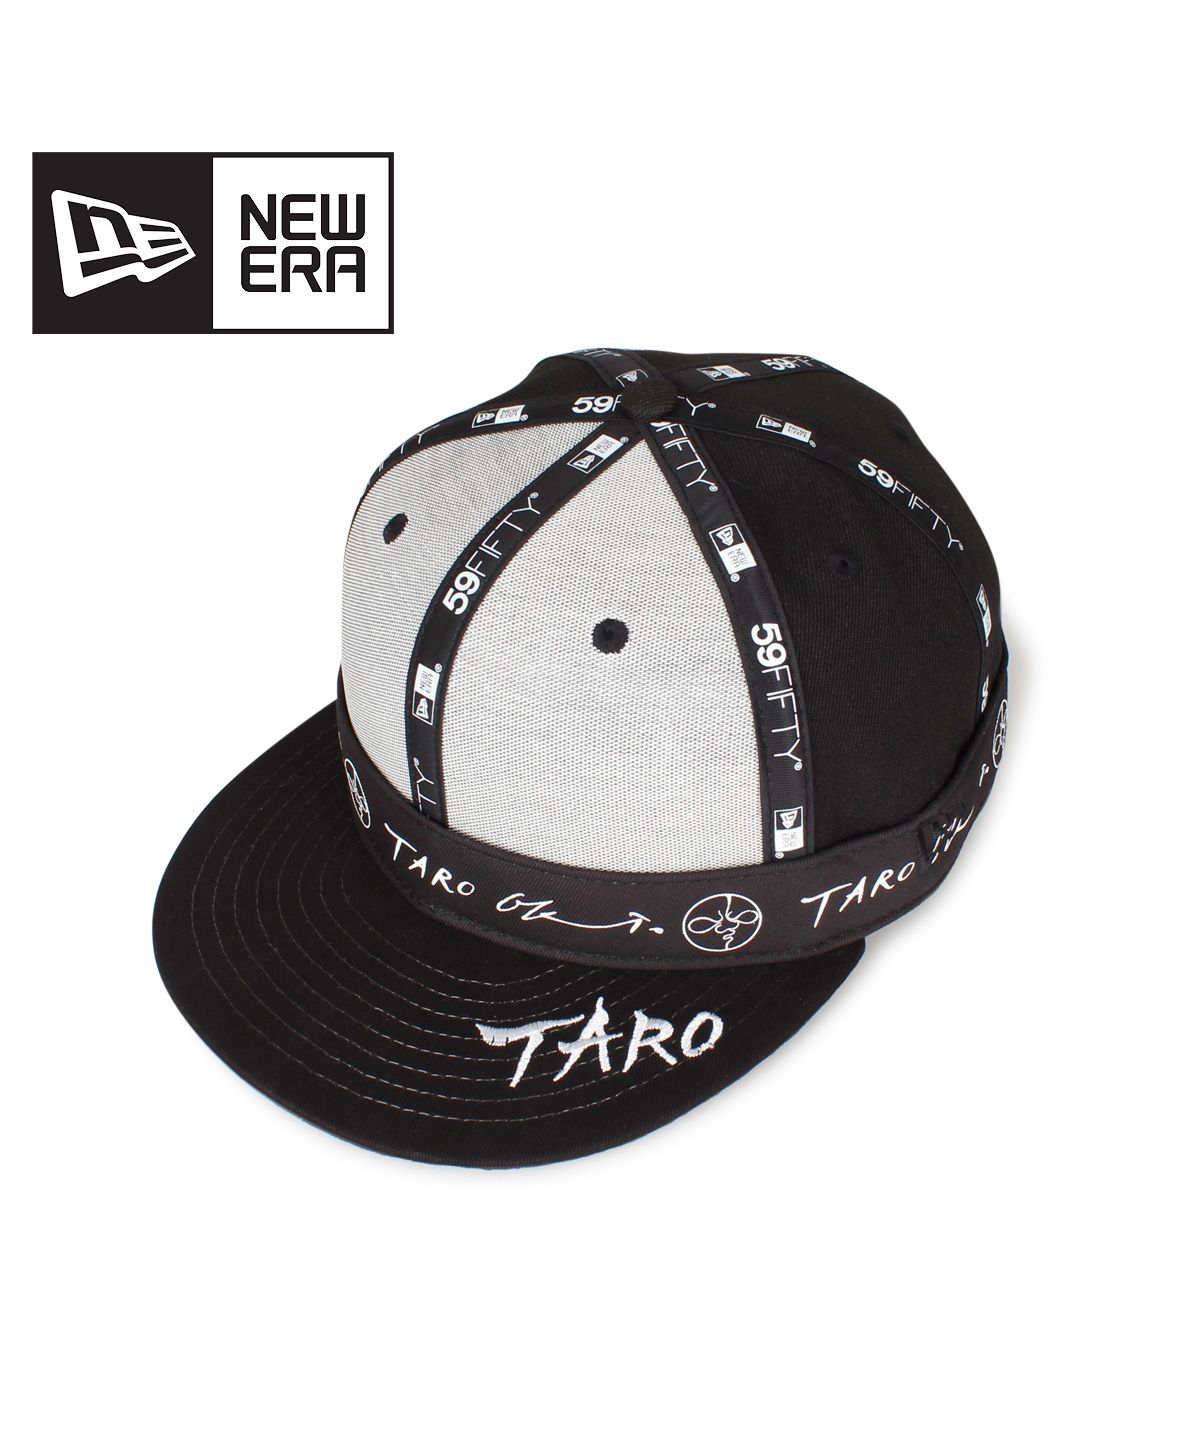 ニューエラ NEW ERA キャップ 帽子 メンズ レディース コラボ 59FIFTY TARO OKAMOTO ブラック 黒 12654524